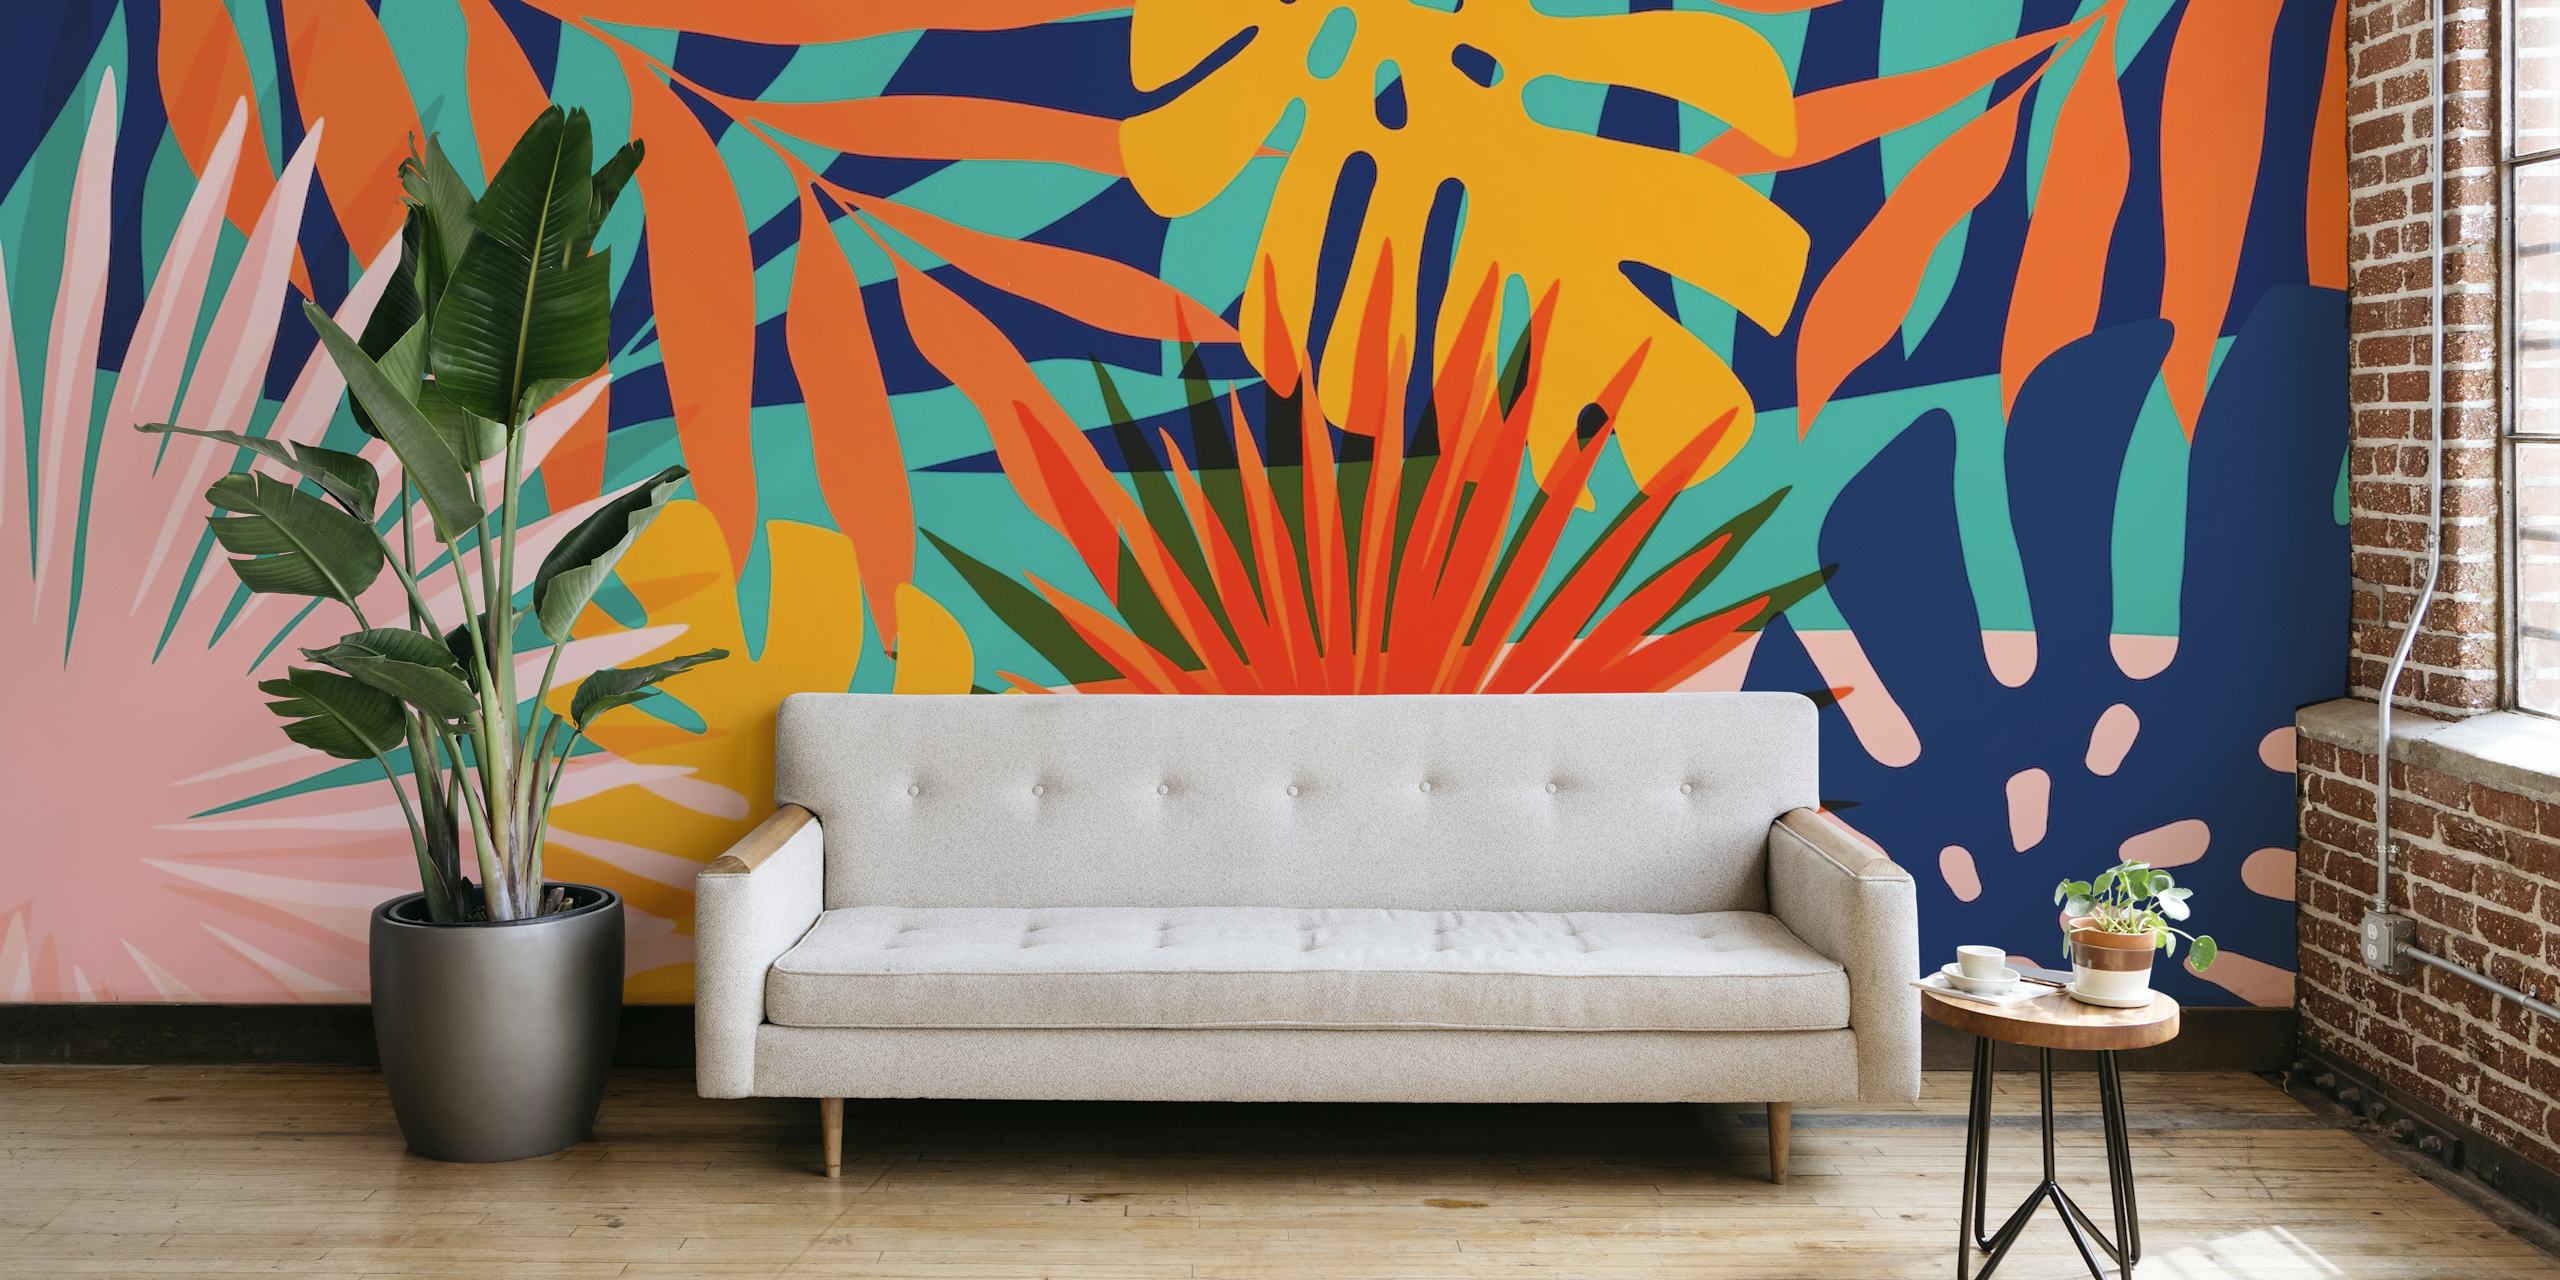 Papier peint mural au feuillage tropical vibrant avec des feuilles orange, vertes et bleues